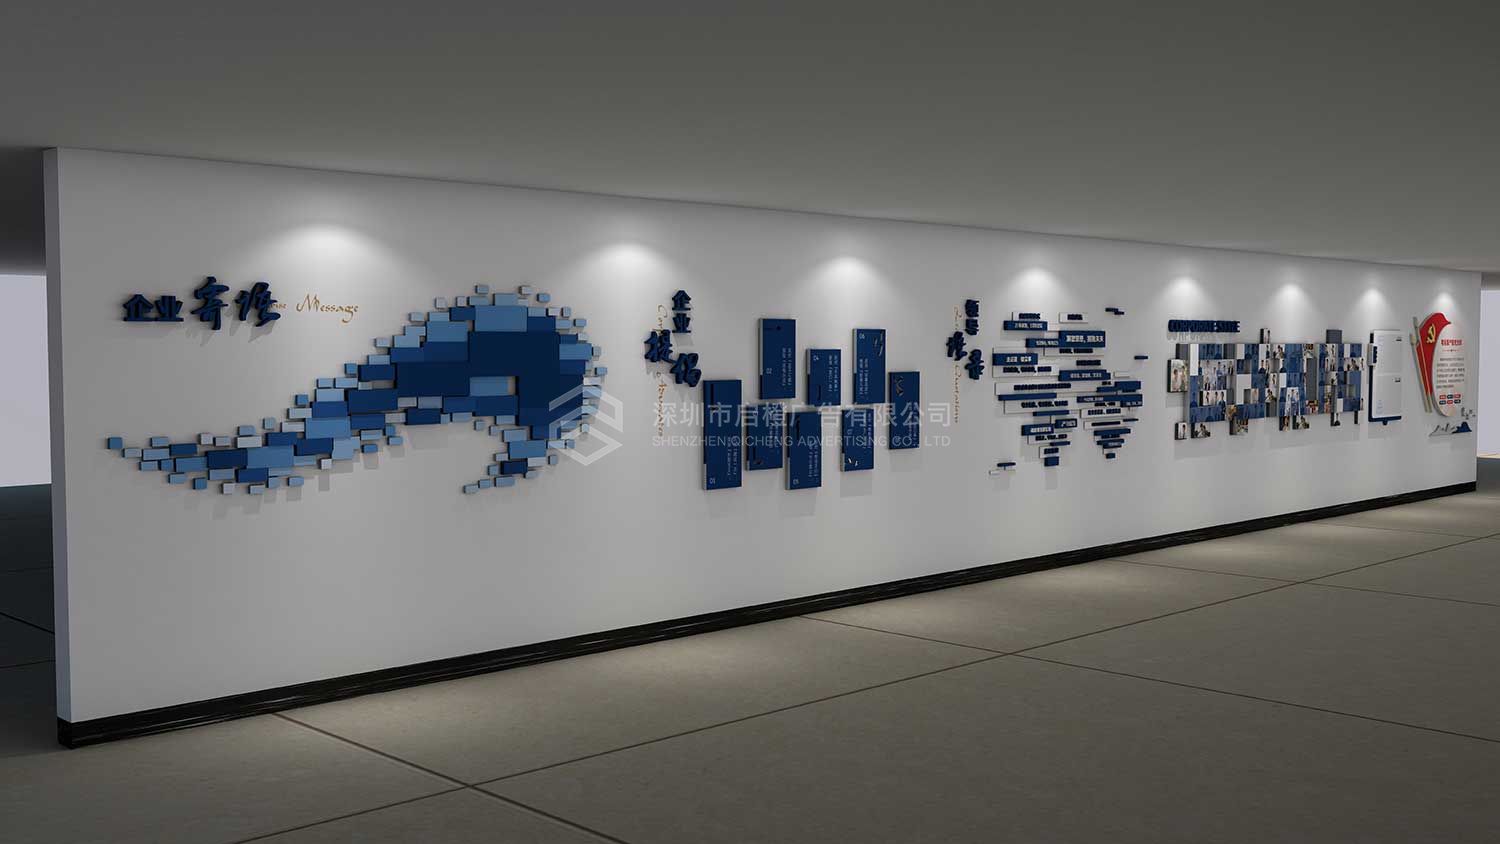 粤港澳大湾区产融投资有限公司走廊文化墙设计效果图(图2)